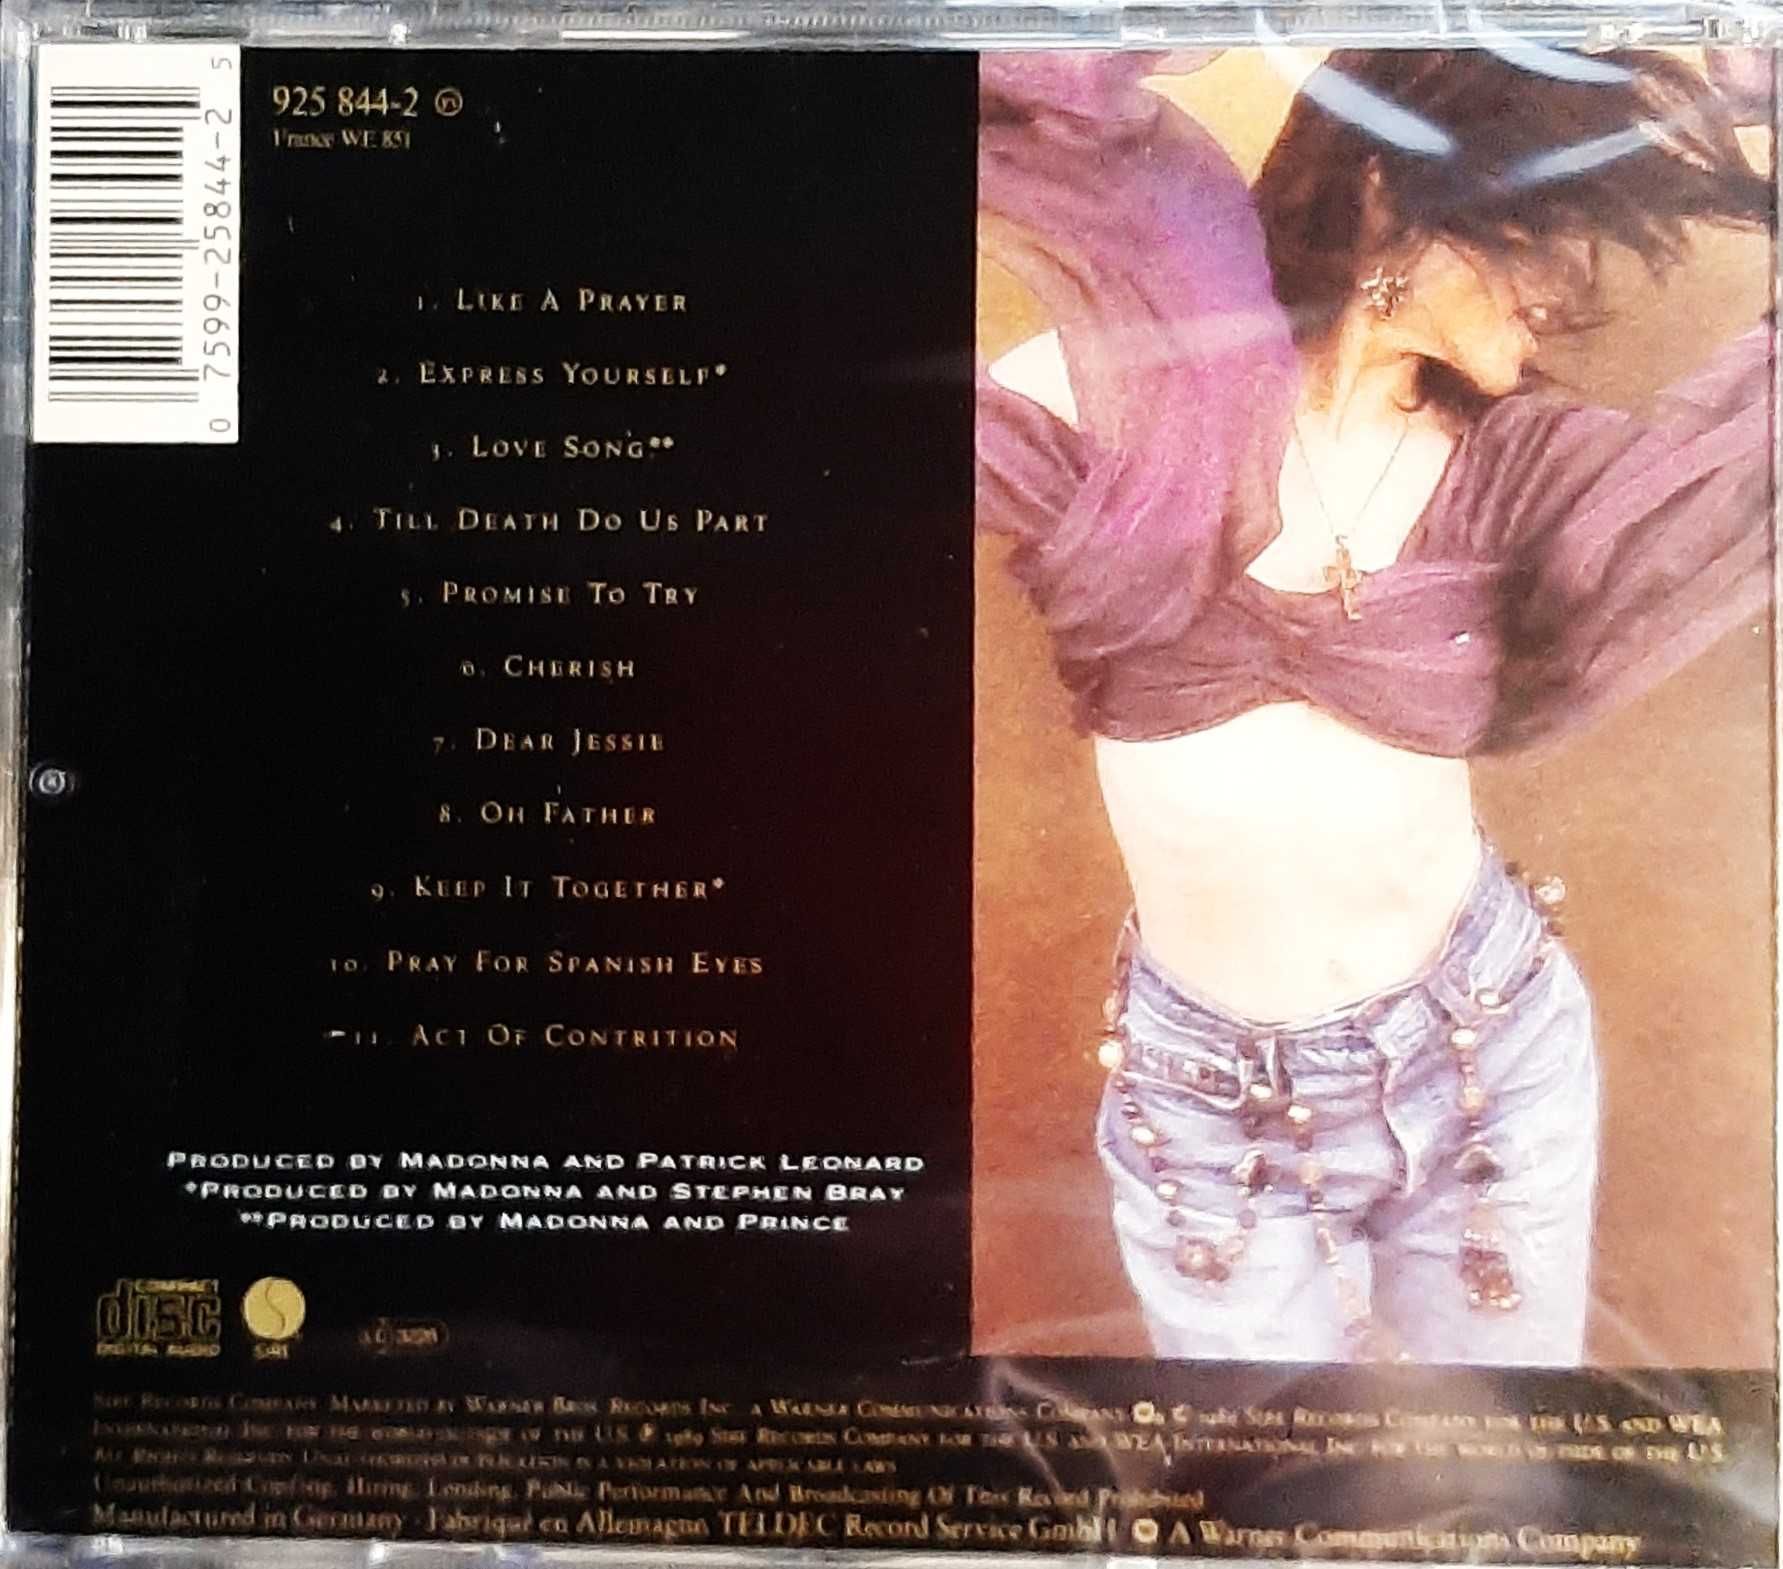 Wspanialy Album CD MADONNA  -Album  Like a Prayer CD